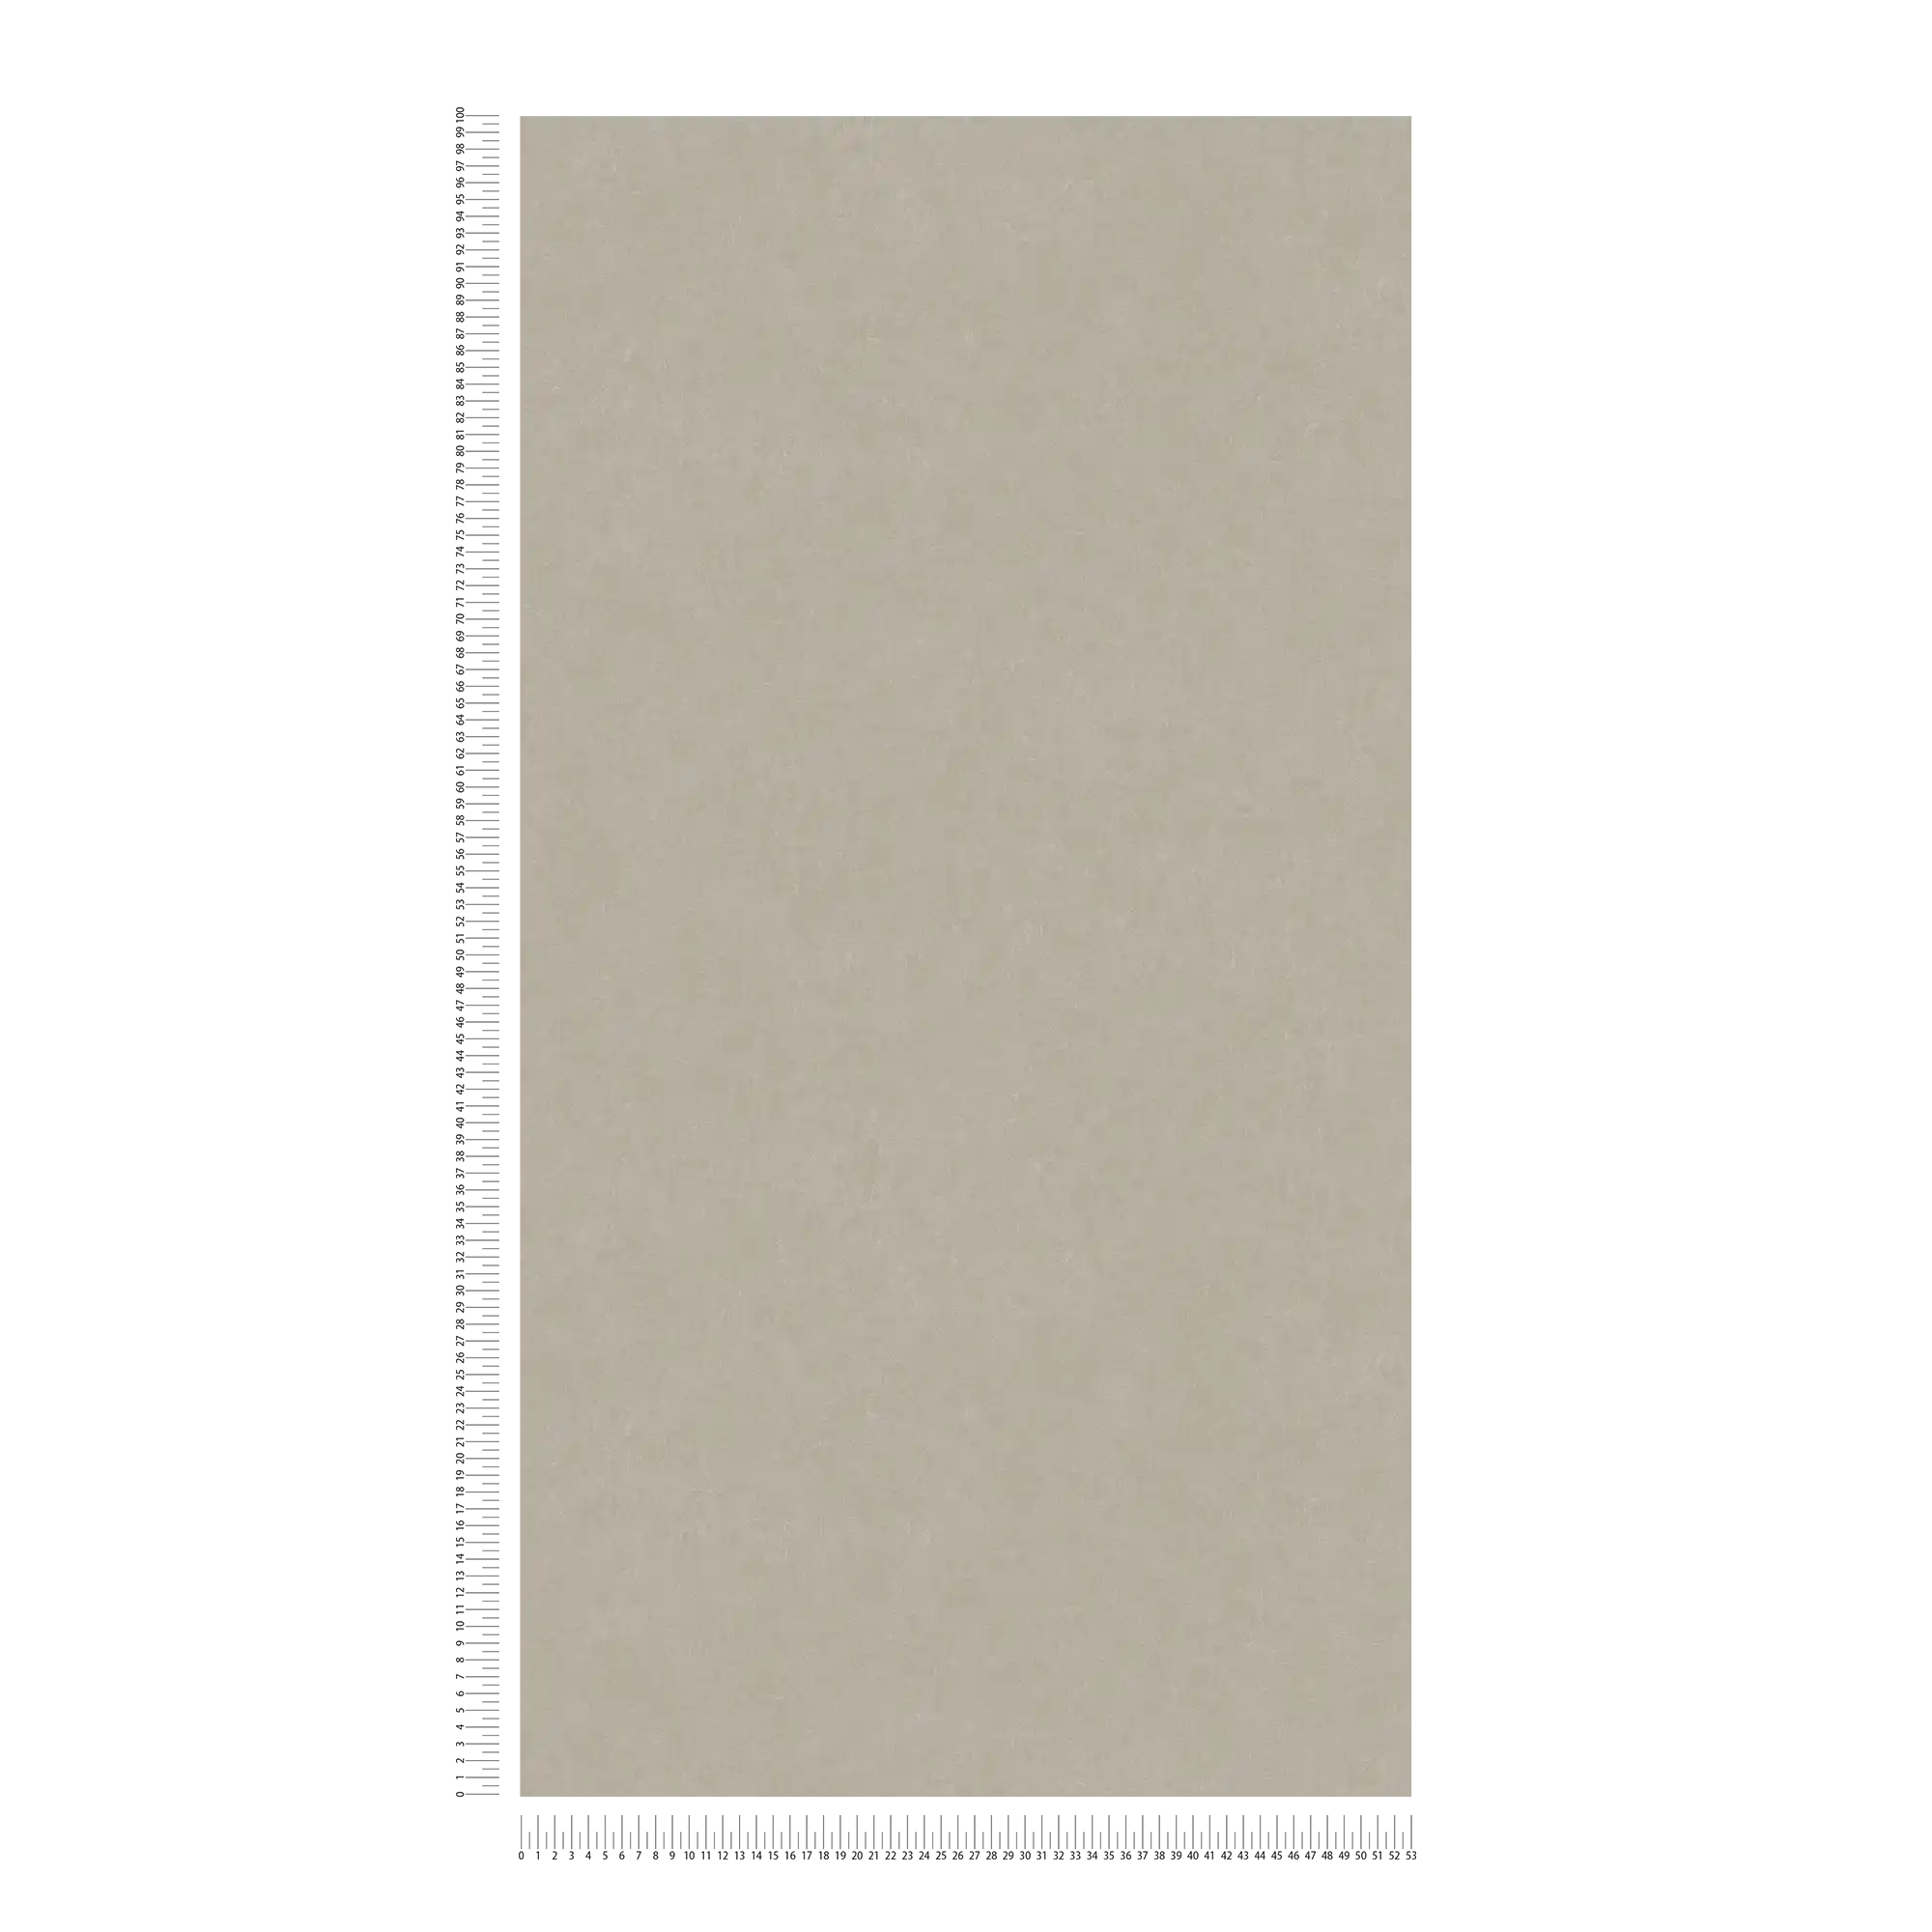             Grau-Beige Tapete einfarbig mit Strukturdesign
        